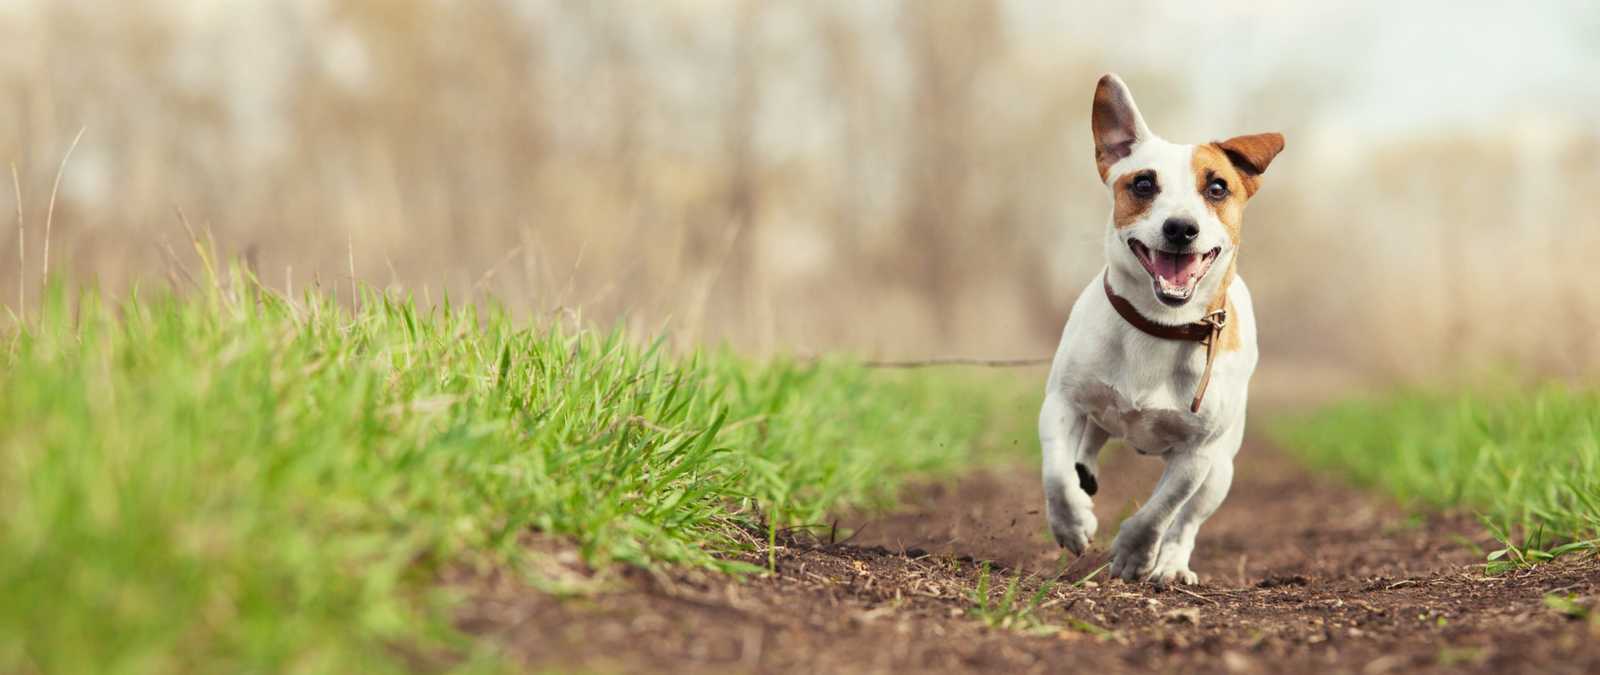 Terrier running in the sunshine